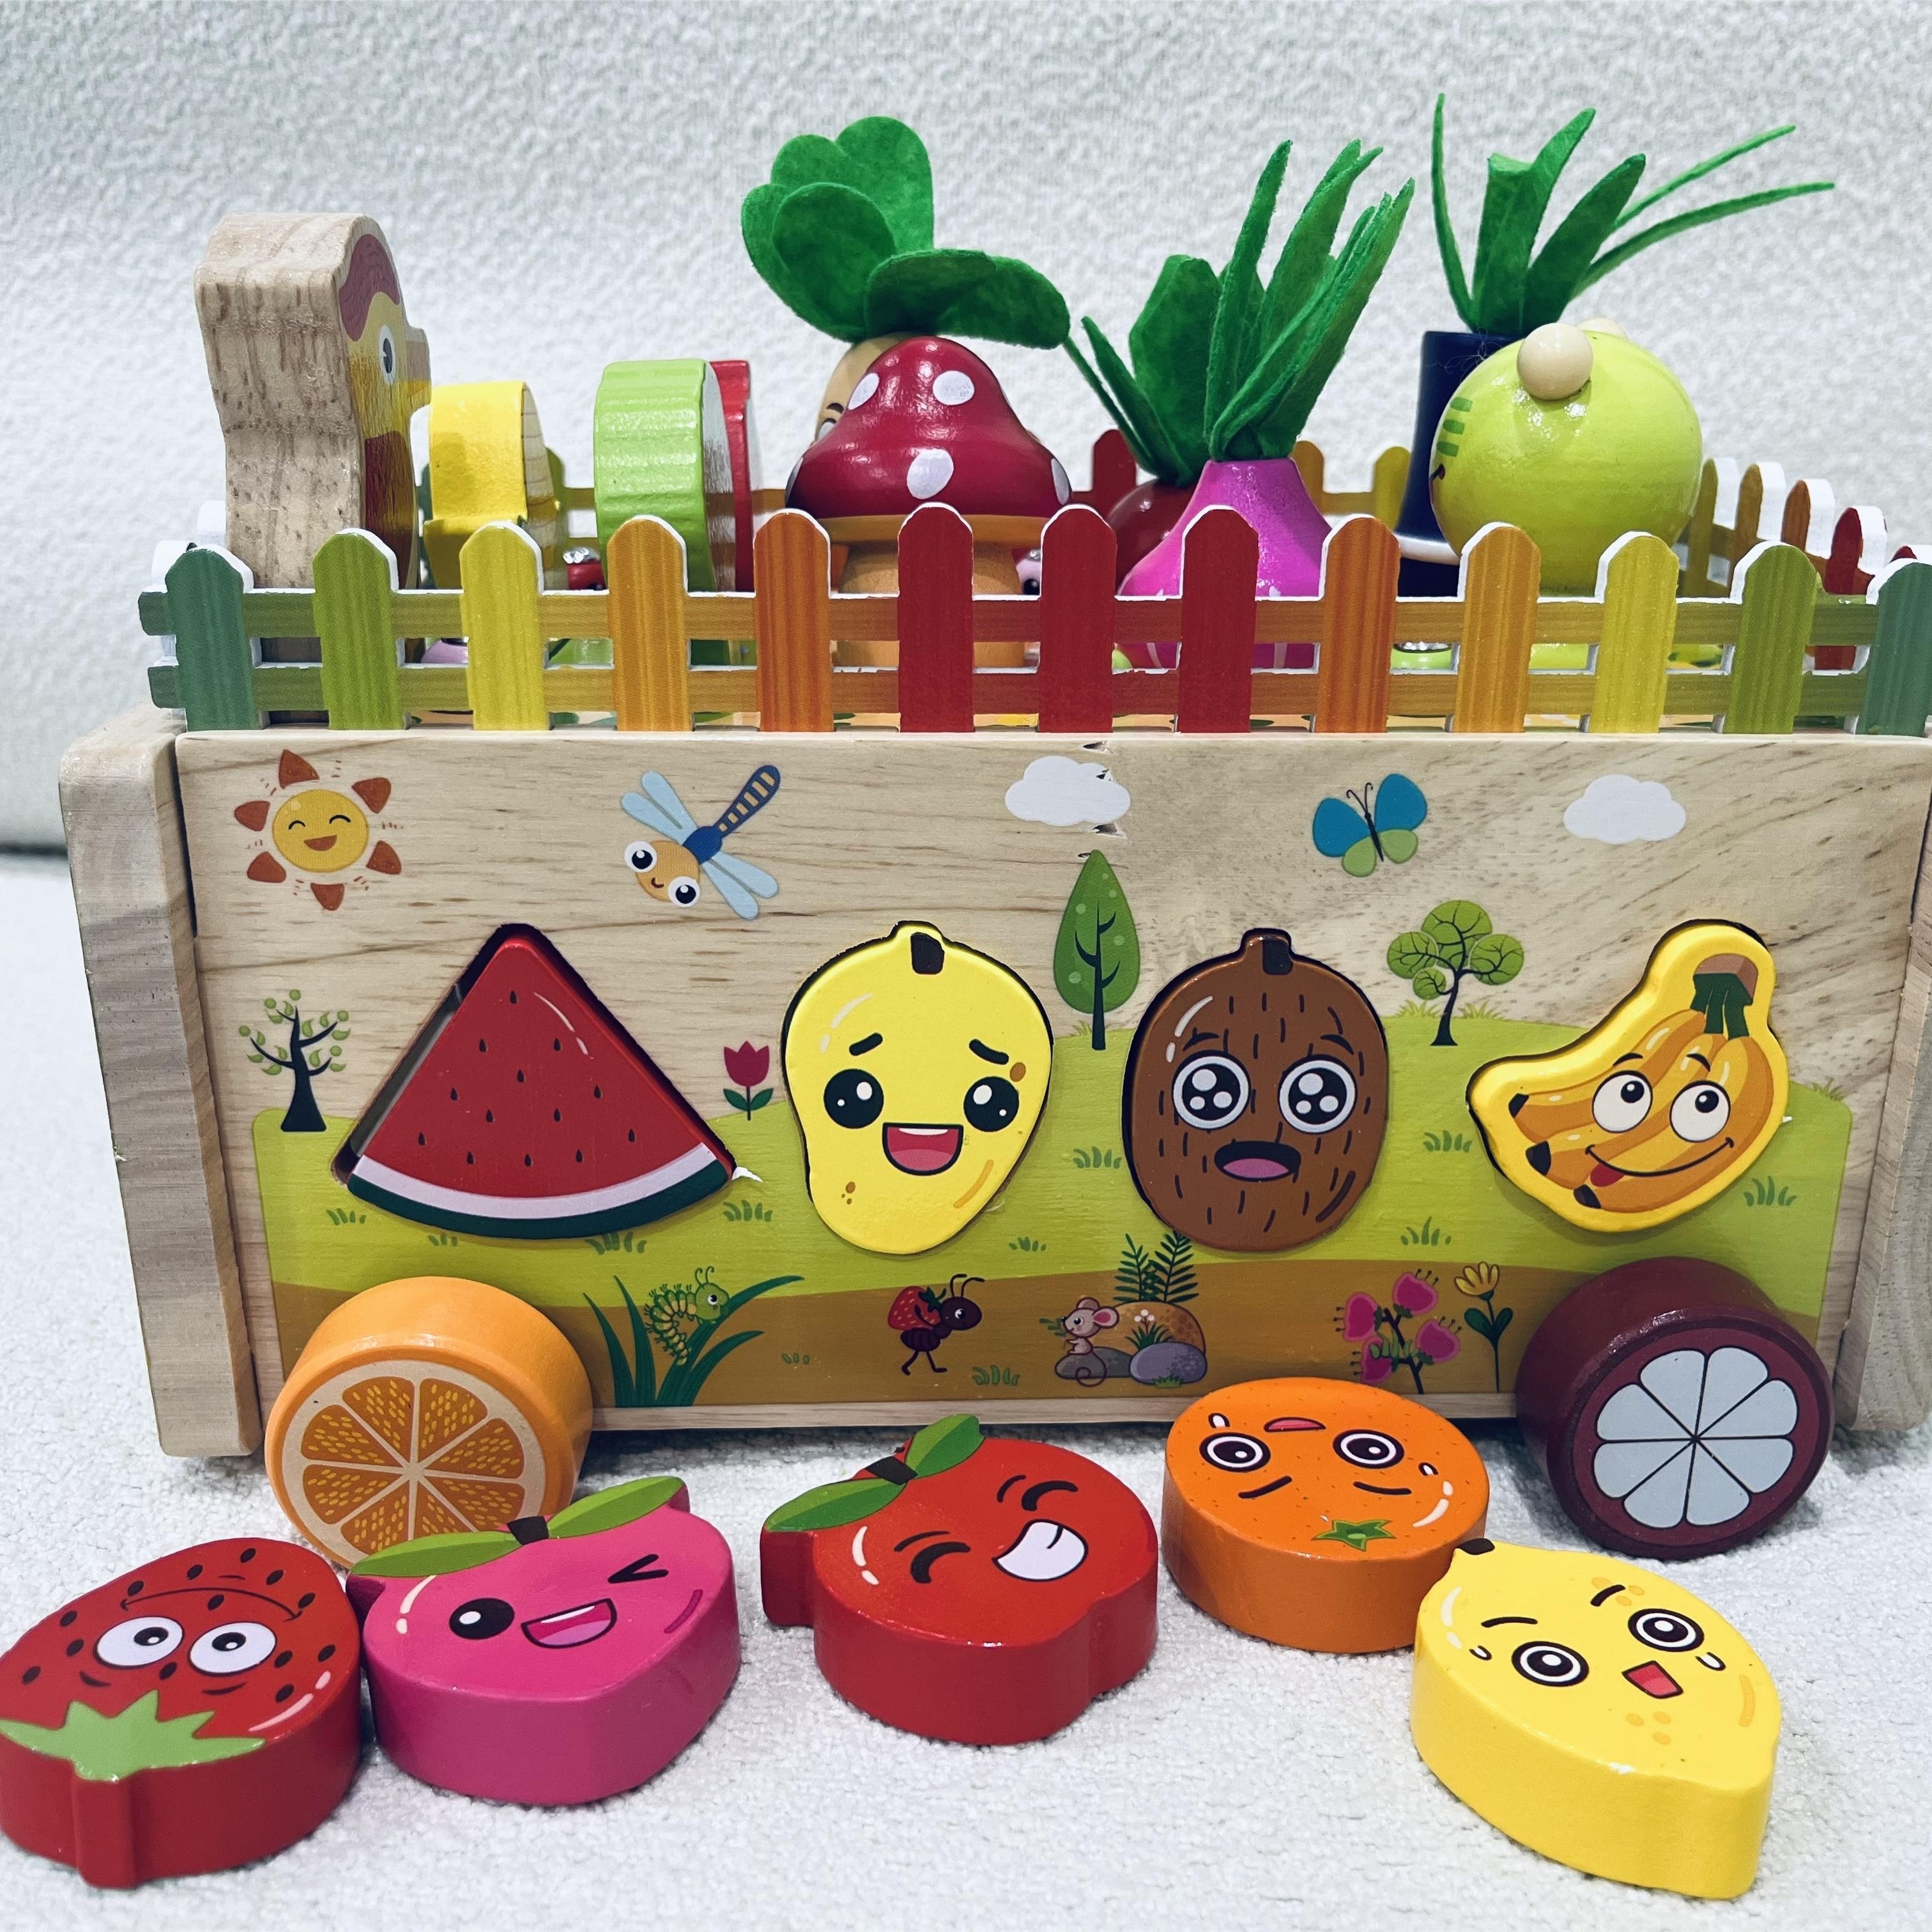 GKPLY Crianças Montessori Brinquedos Educativos de Madeira para Bebês  Meninos Meninas Idade 2 3 4 Anos, Brinquedos de Classificação de Formas  Presentes para Crianças 2-4, Madeira Pré-escolar Aprendiza